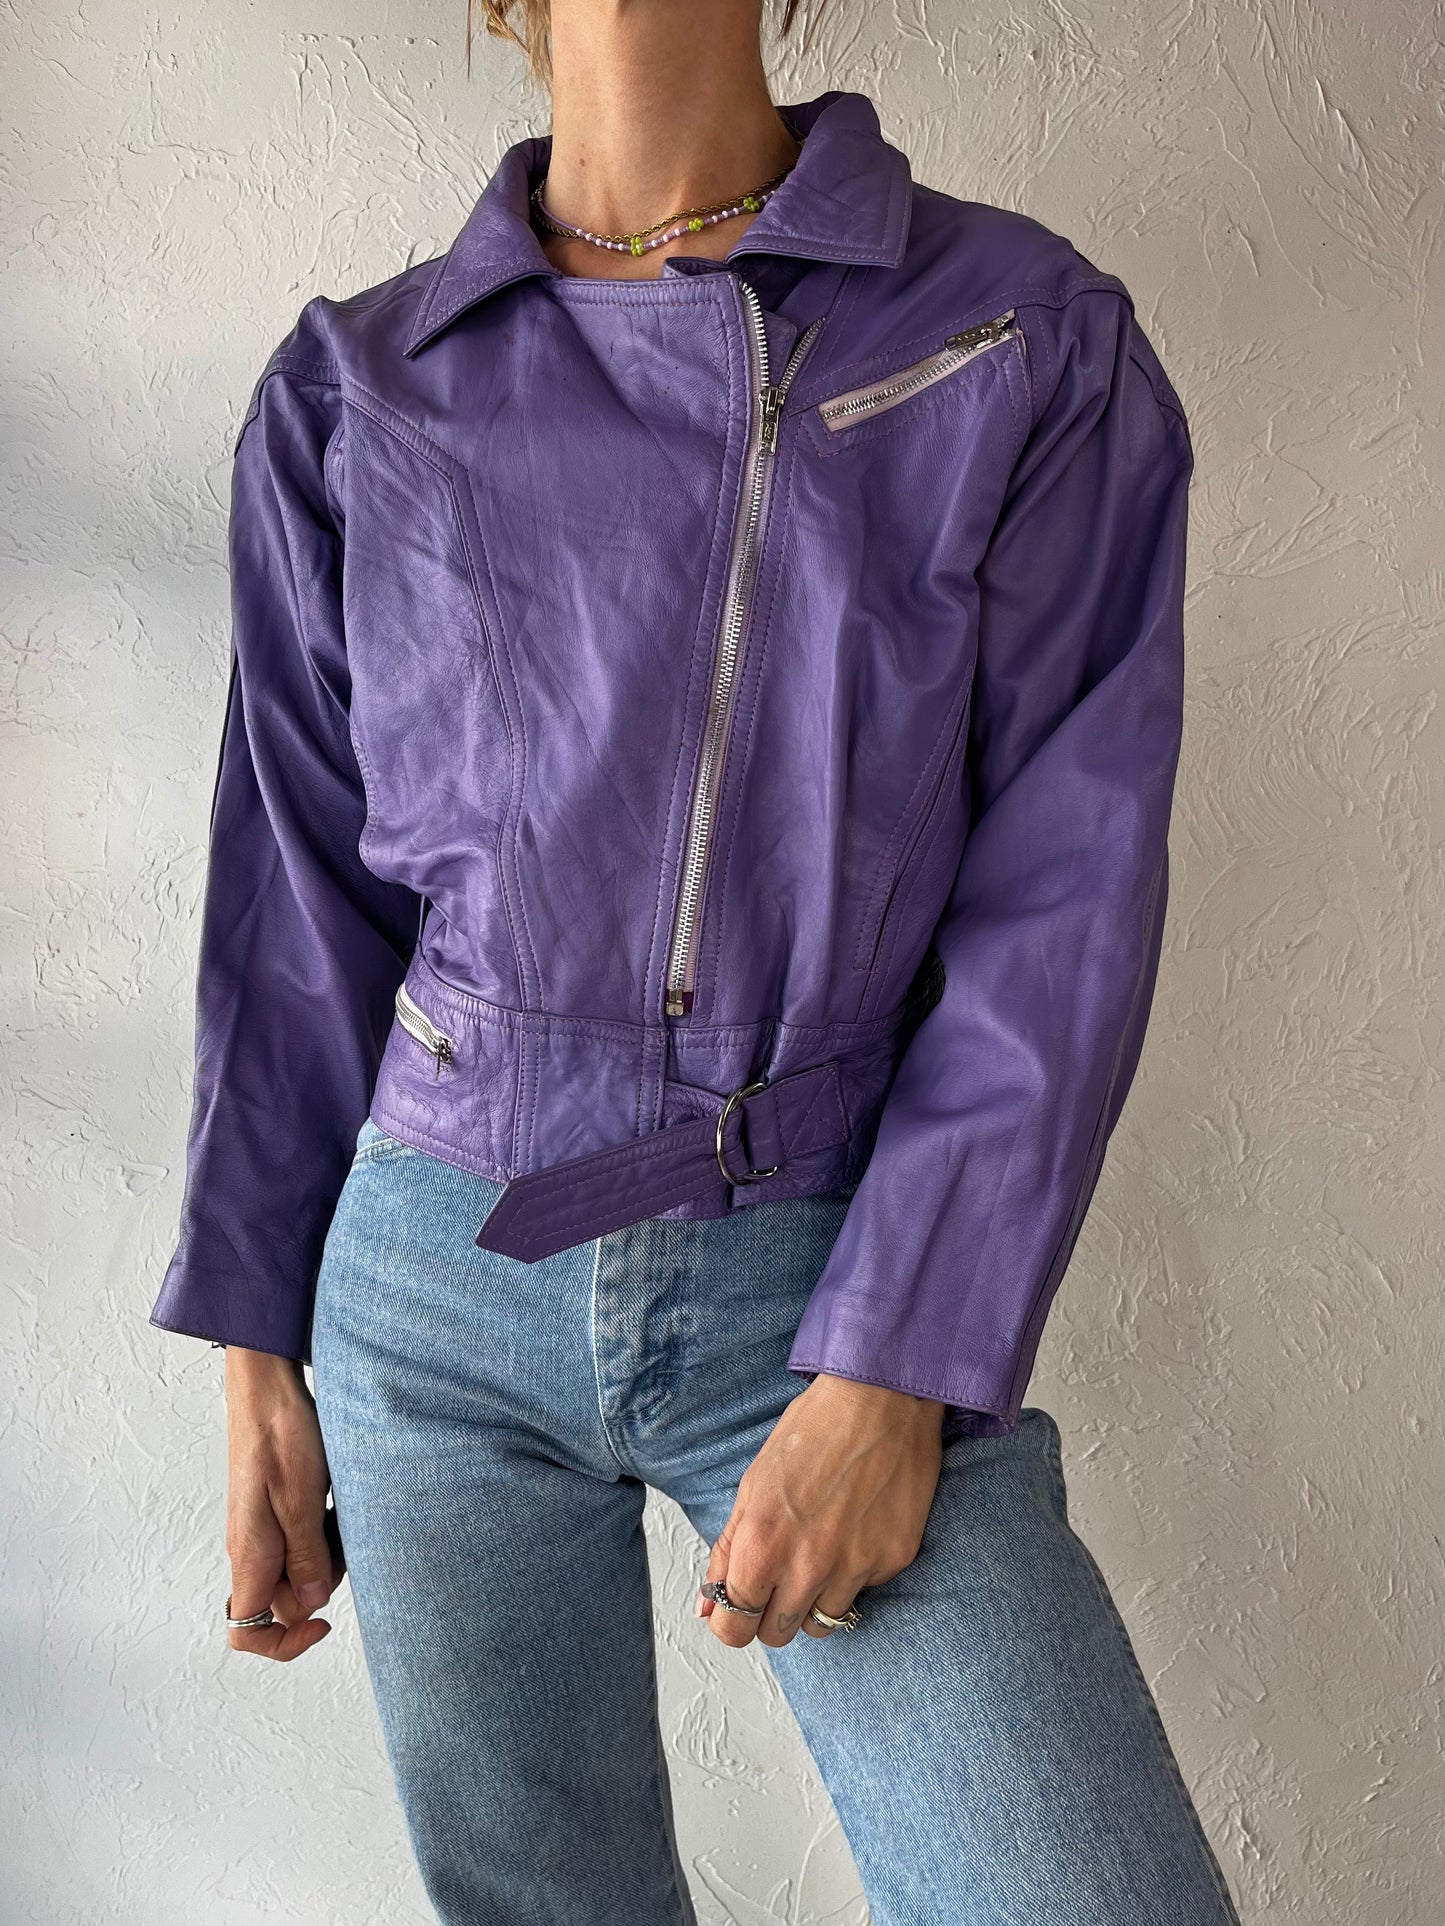 90s 'Khjana Imports' Purple Leather Moto Jacket / Medium